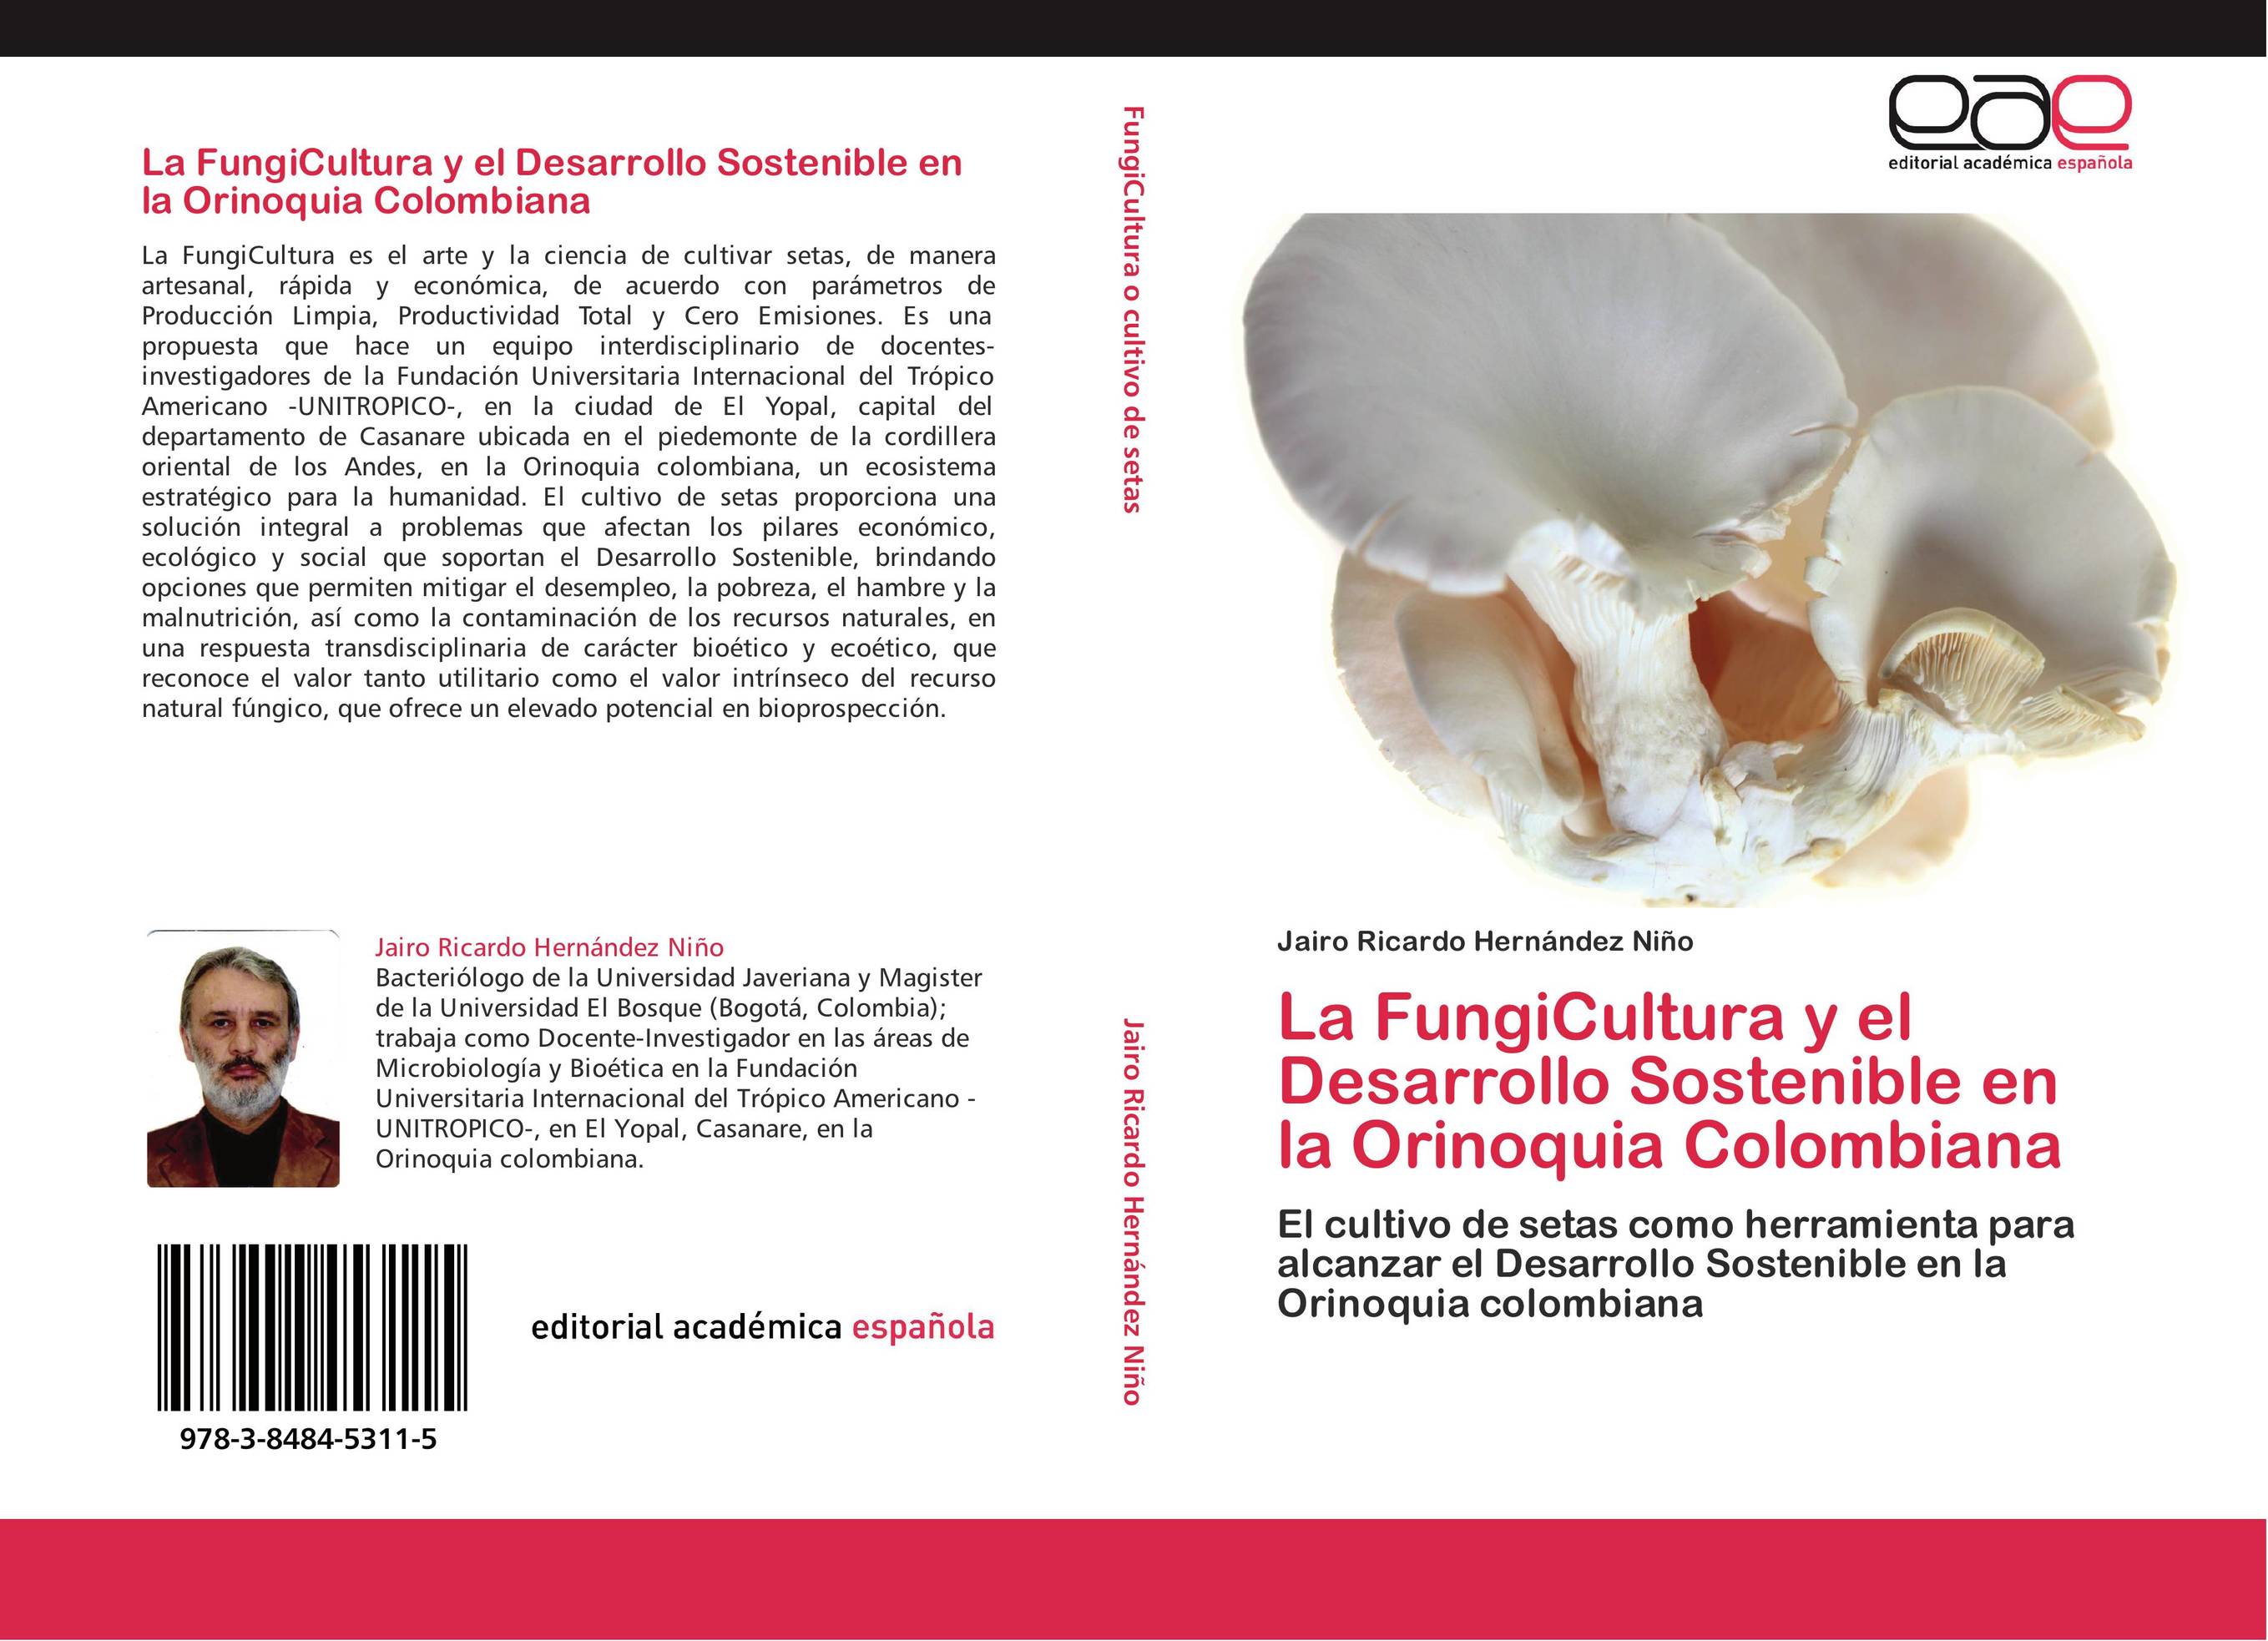 La FungiCultura y el Desarrollo Sostenible en la Orinoquia Colombiana